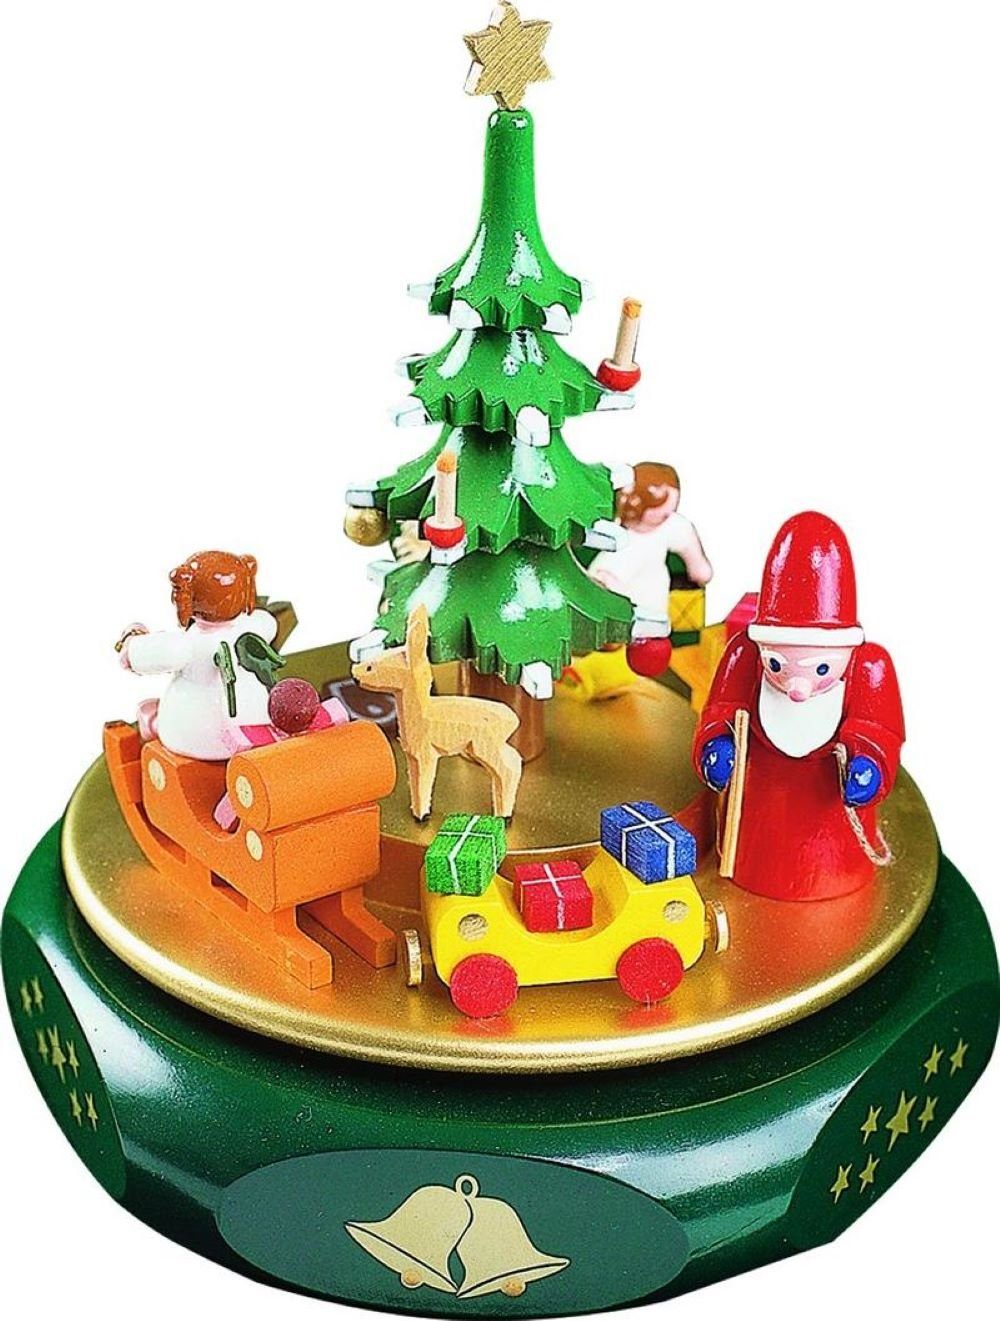 Richard Glaesser Spieluhr Spieldose Weihnachtsträume, Höhe: 17 cm, Handwerkskunst aus dem Erzgebirge